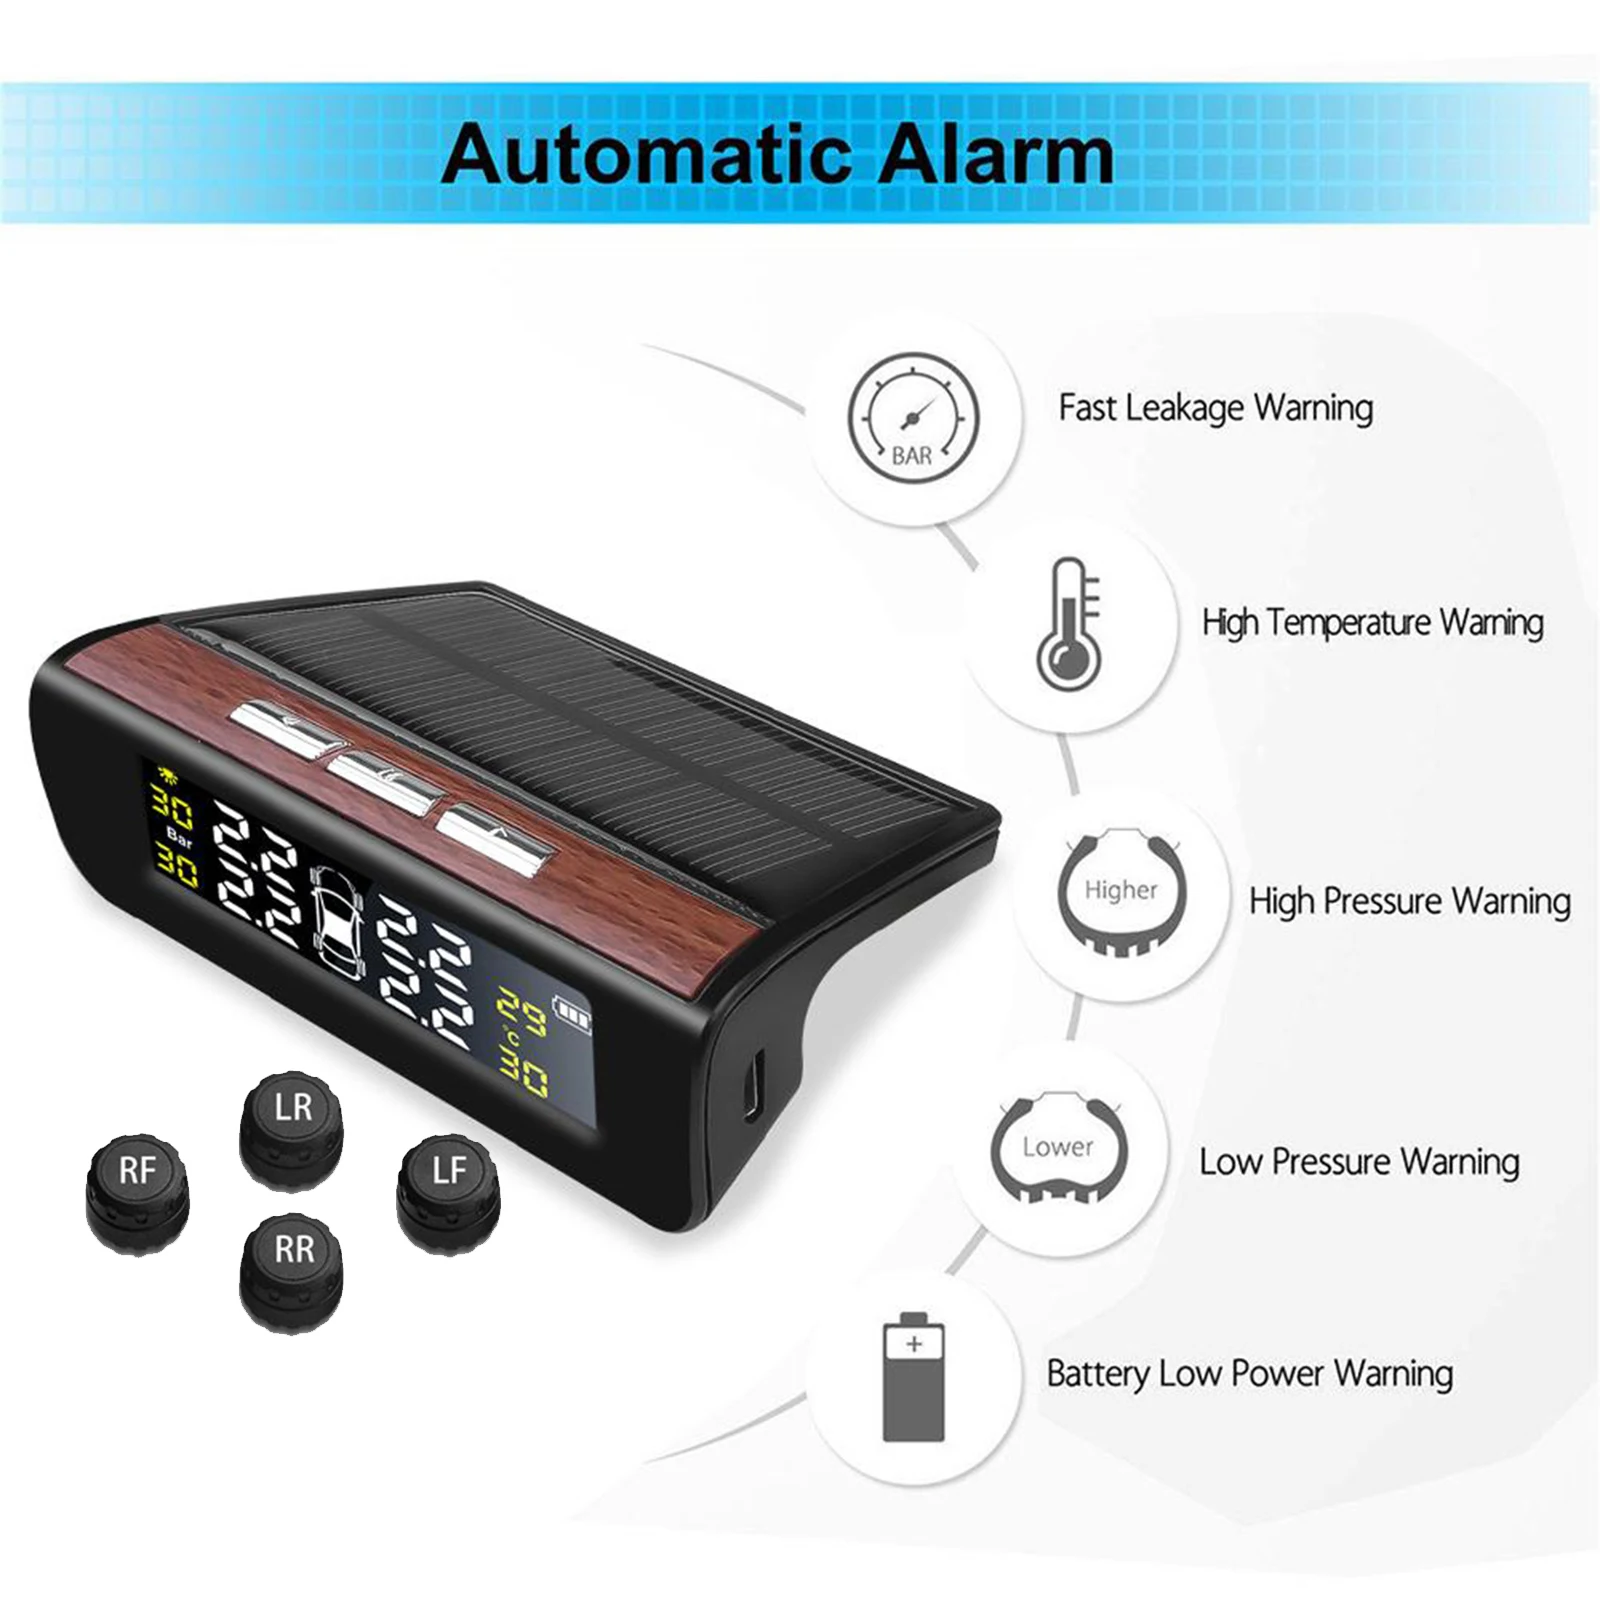 Solar TPMS Car Tire Pressure Alarm Monitor System 4 Sensor Temperature Alert